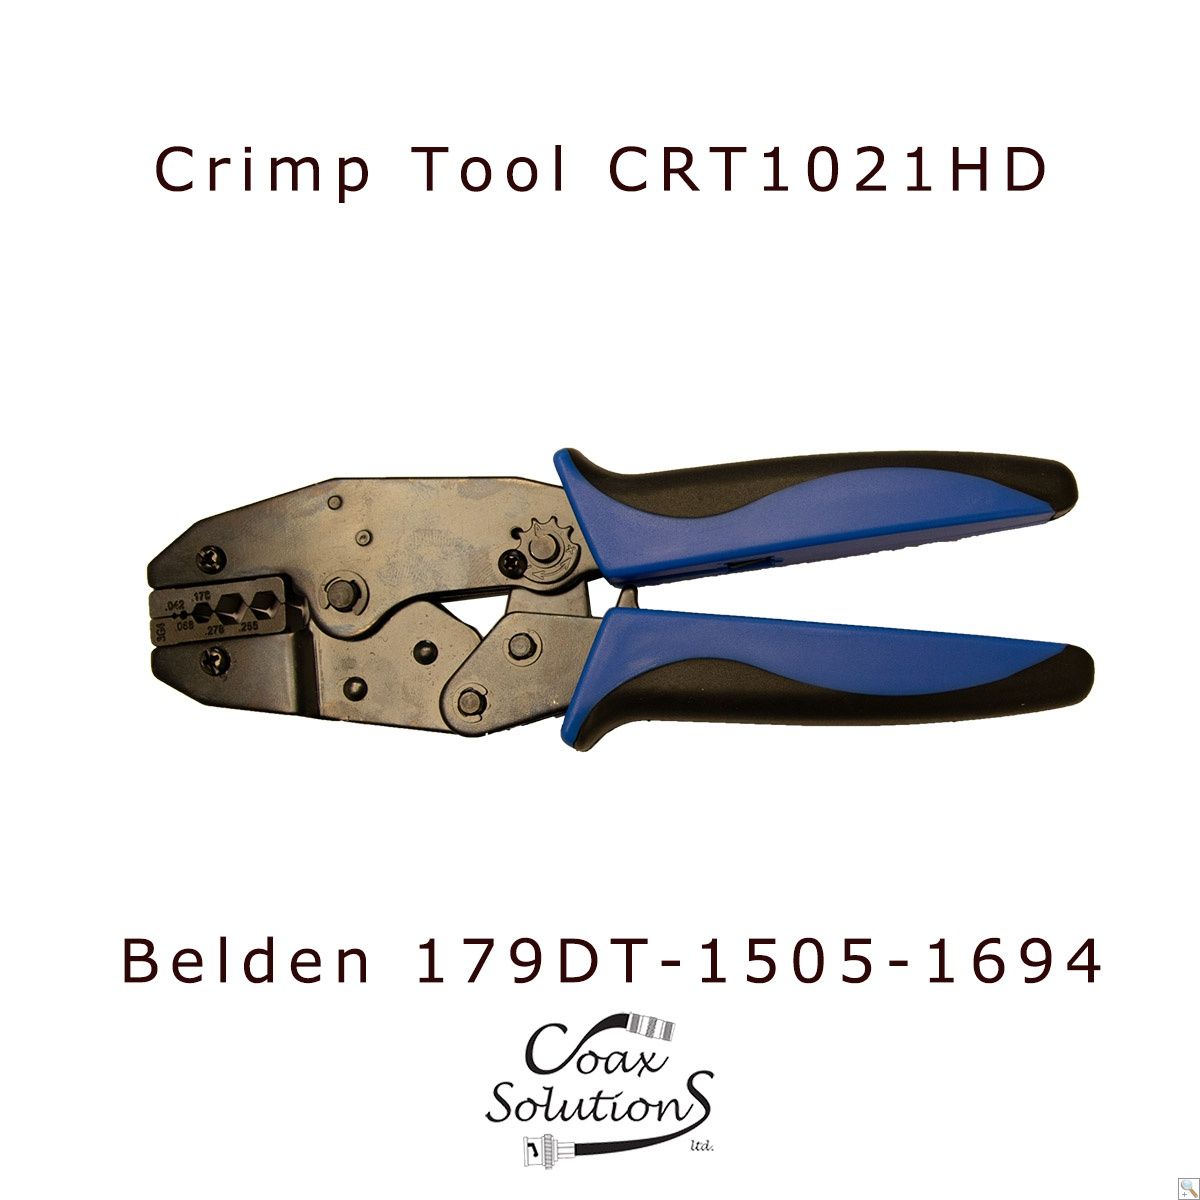 HD-SDI Crimp Tool - Belden 179DT, 1505 & 1694